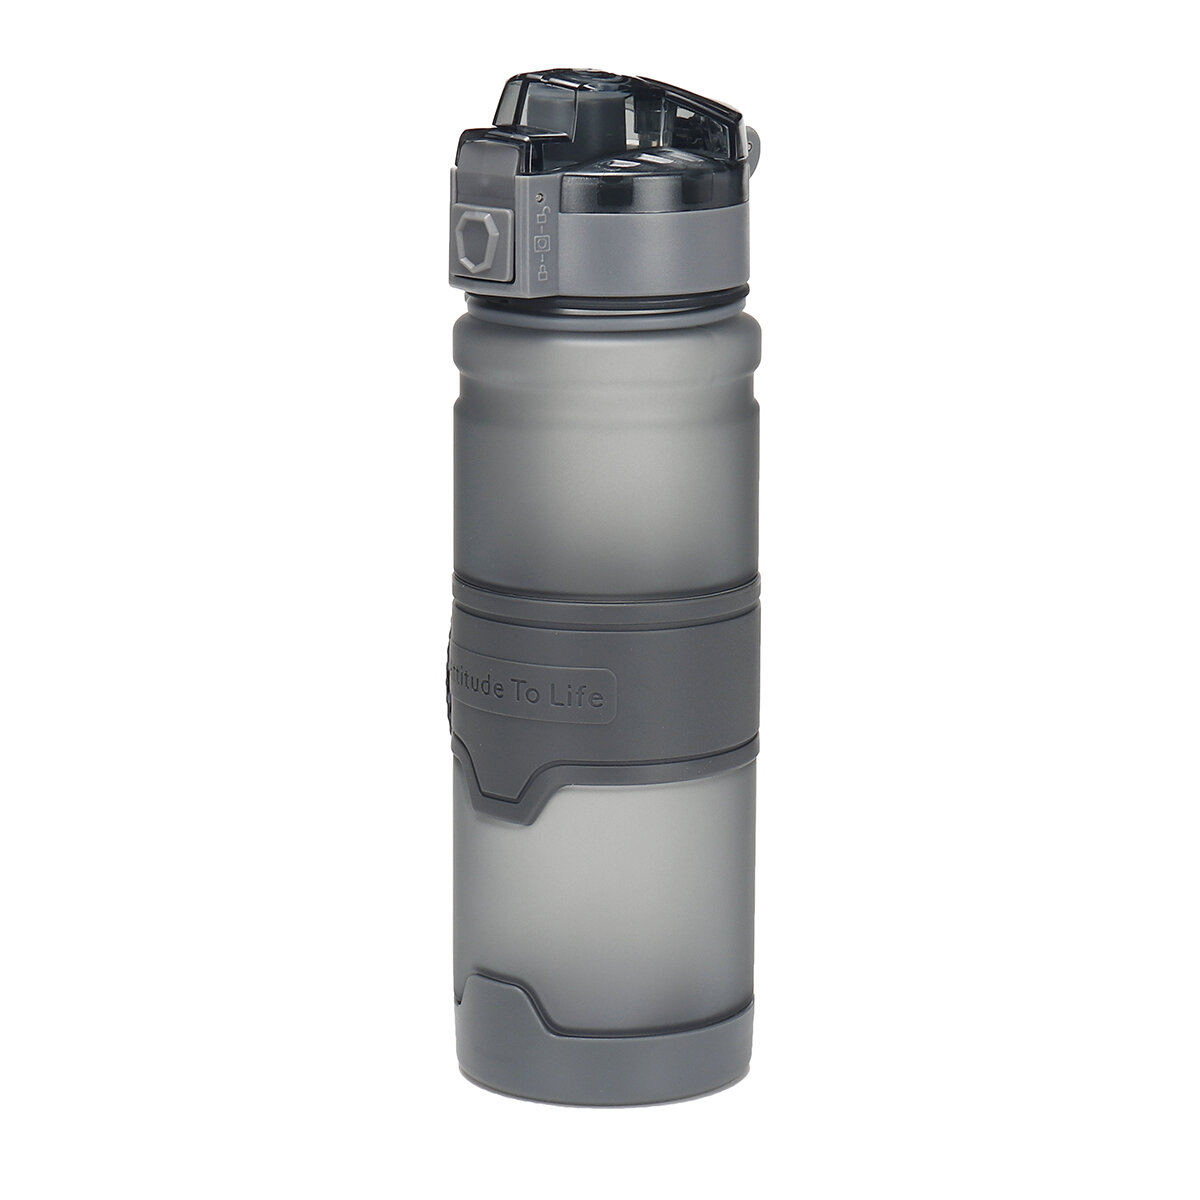 500/1000 ml Waterflessen van BPA-vrij, lekvrij plastic met stuiterende deksel voor buitensporten, kamperen en reizen.